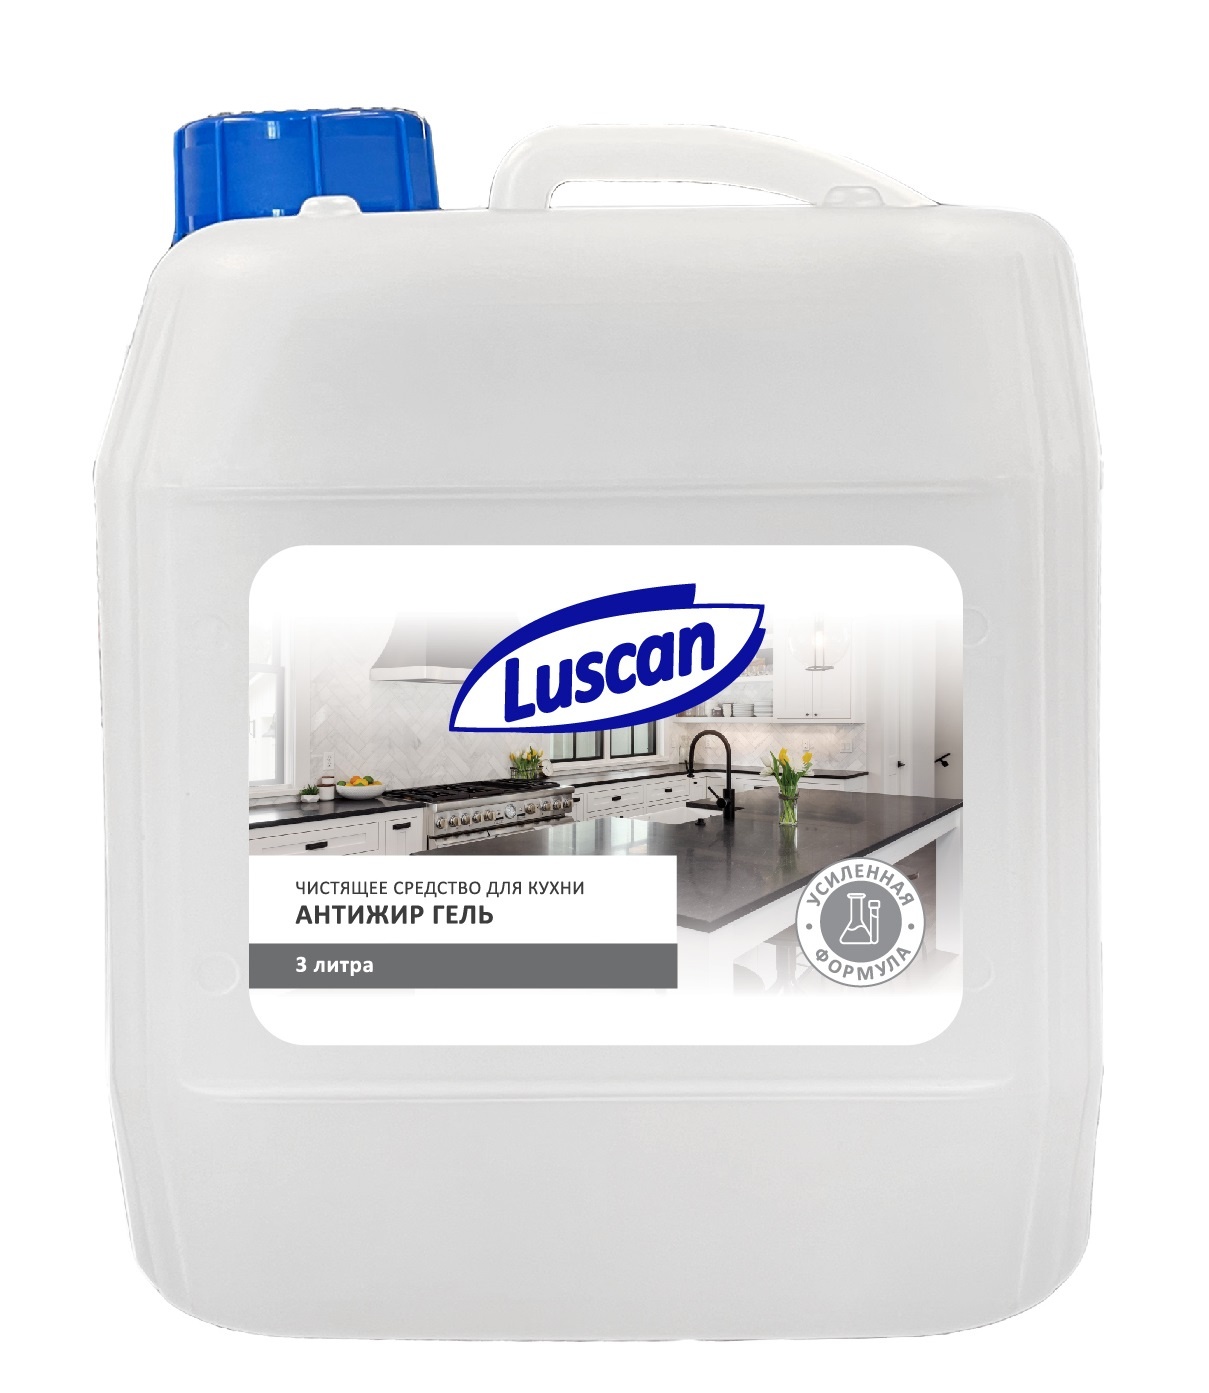 Чистящее средство для кухни Luscan антижир, гель, 3 л